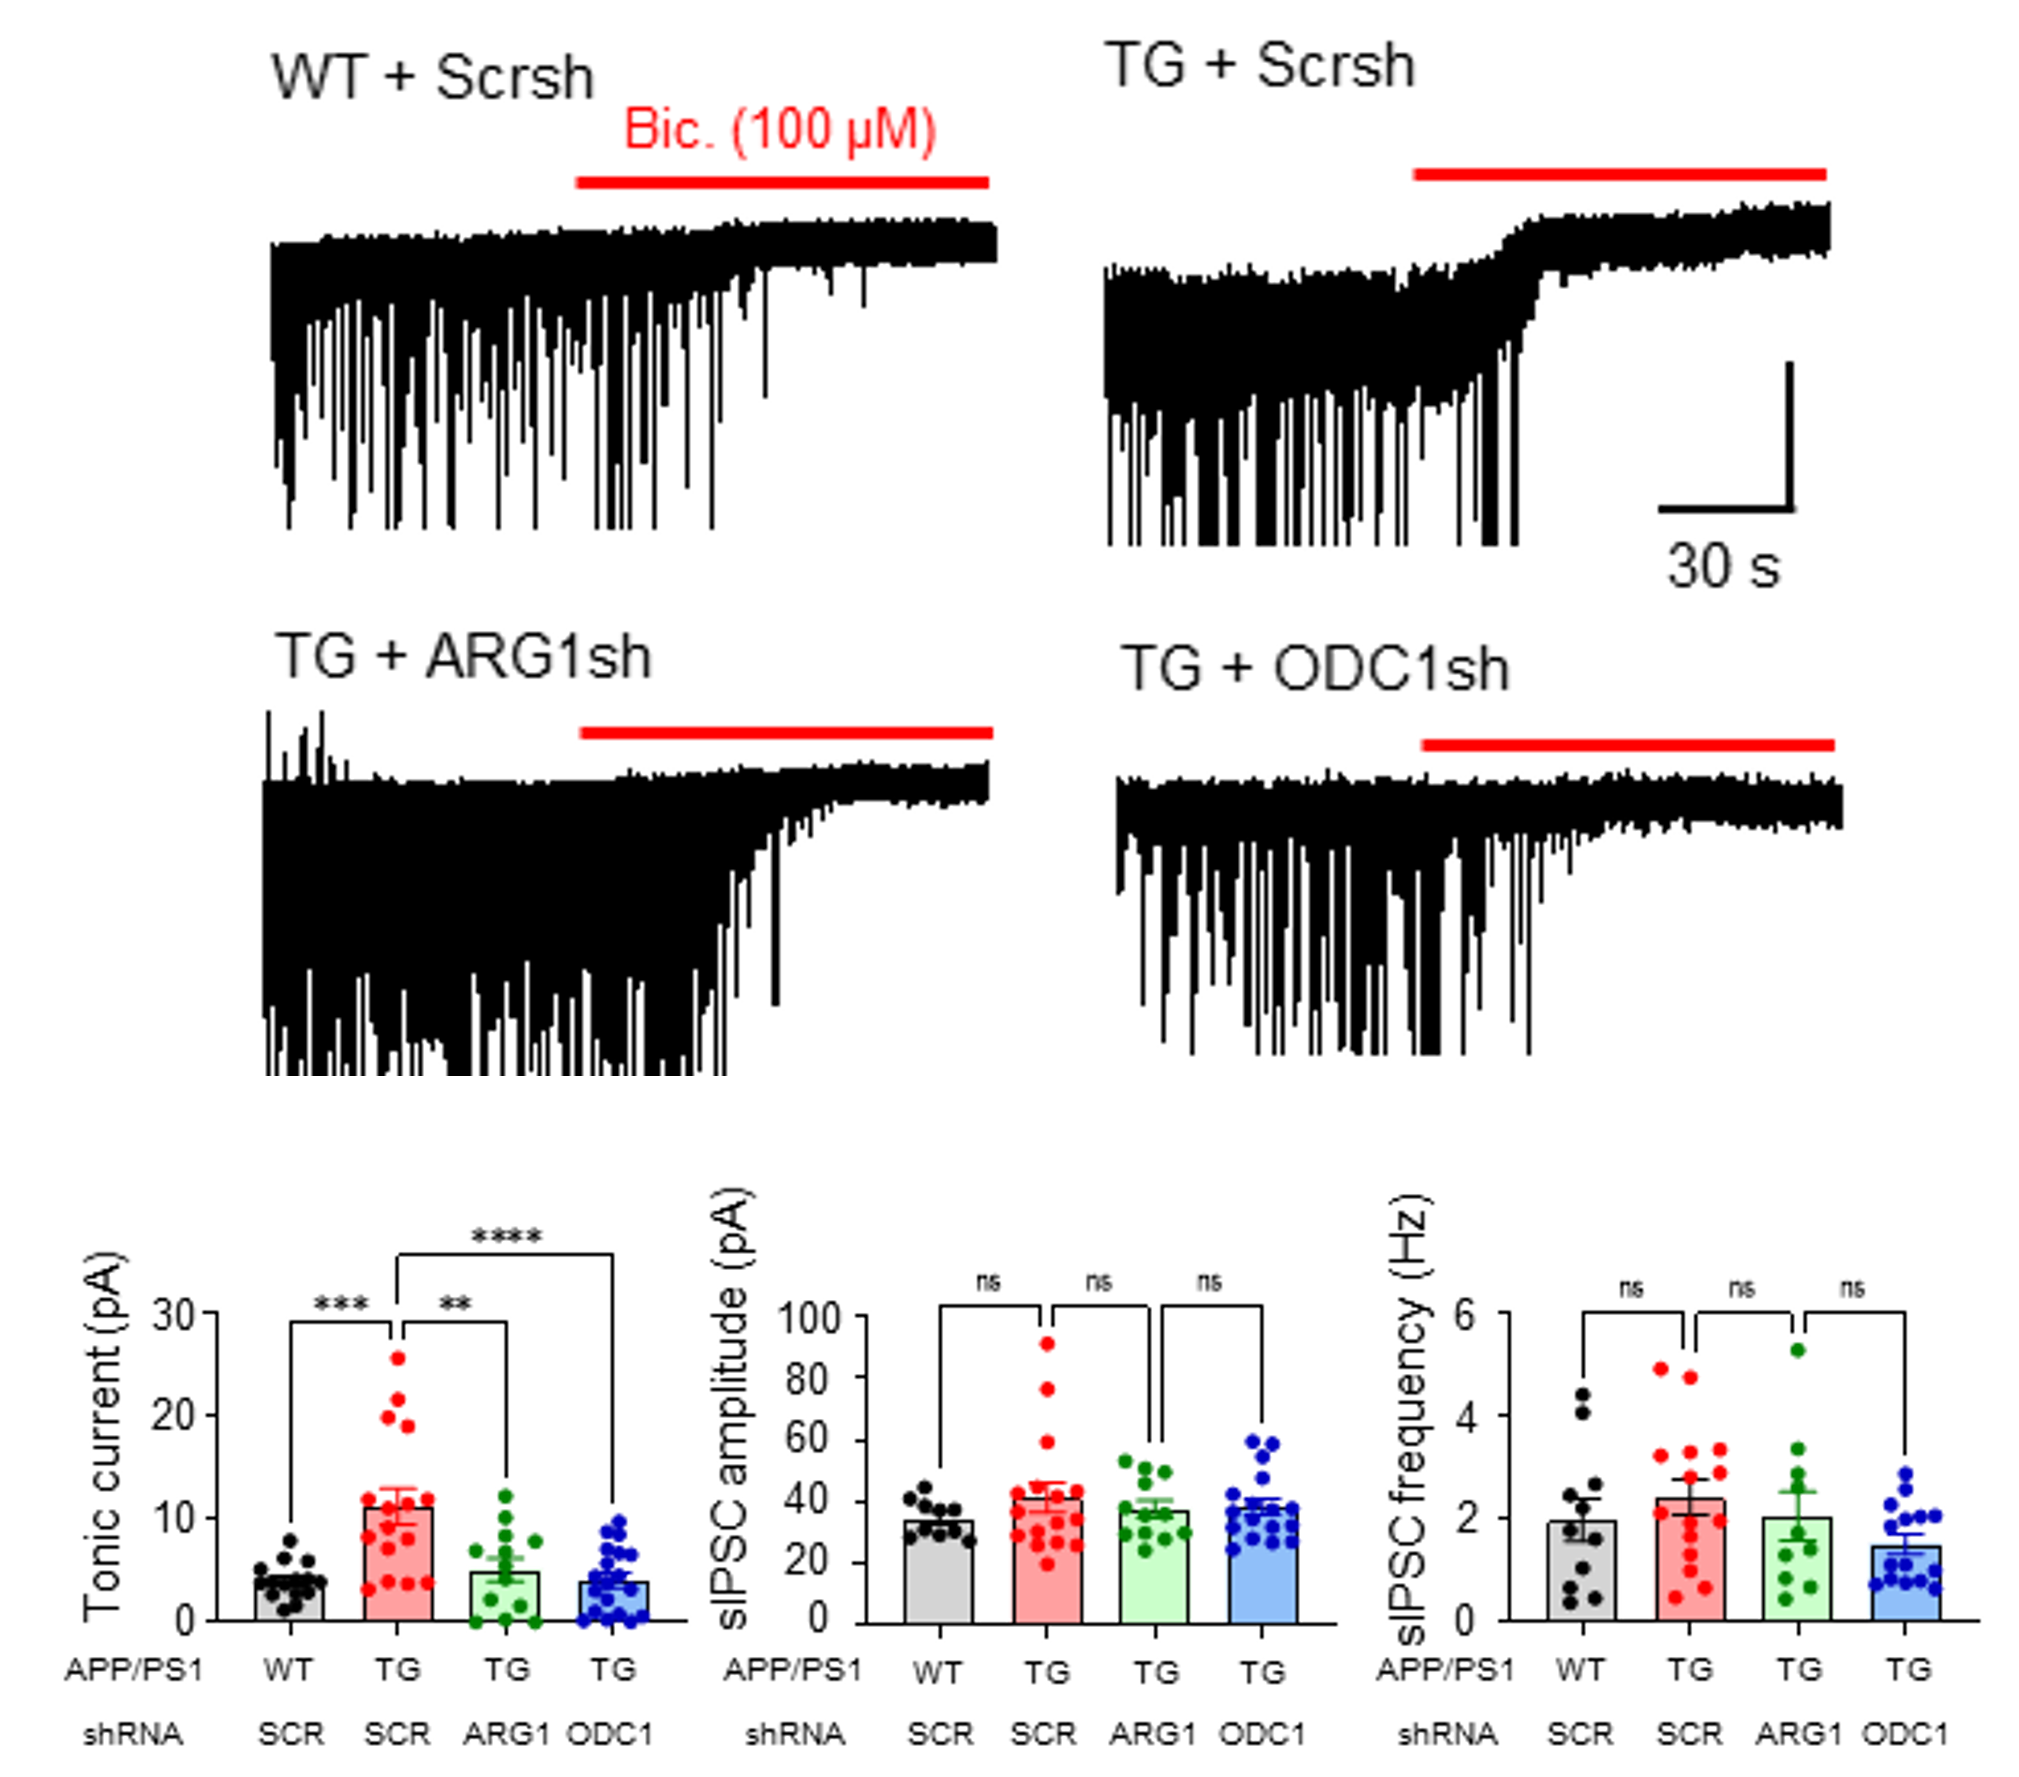 [그림 3] 요소회로 효소(ARG1, ODC1)의 조절에 따른 별세포의 GABA 분비 감소
            별세포의 요소회로 효소 (ARG1, ODC1)을 조절함에 따라 별세포에서 분비되는 GABA가 감소함을 확인하였으며, 이는 요소회로가 별세포의 GABA 생성을 조절하는 upstream 경로라는 것을 보여준다.